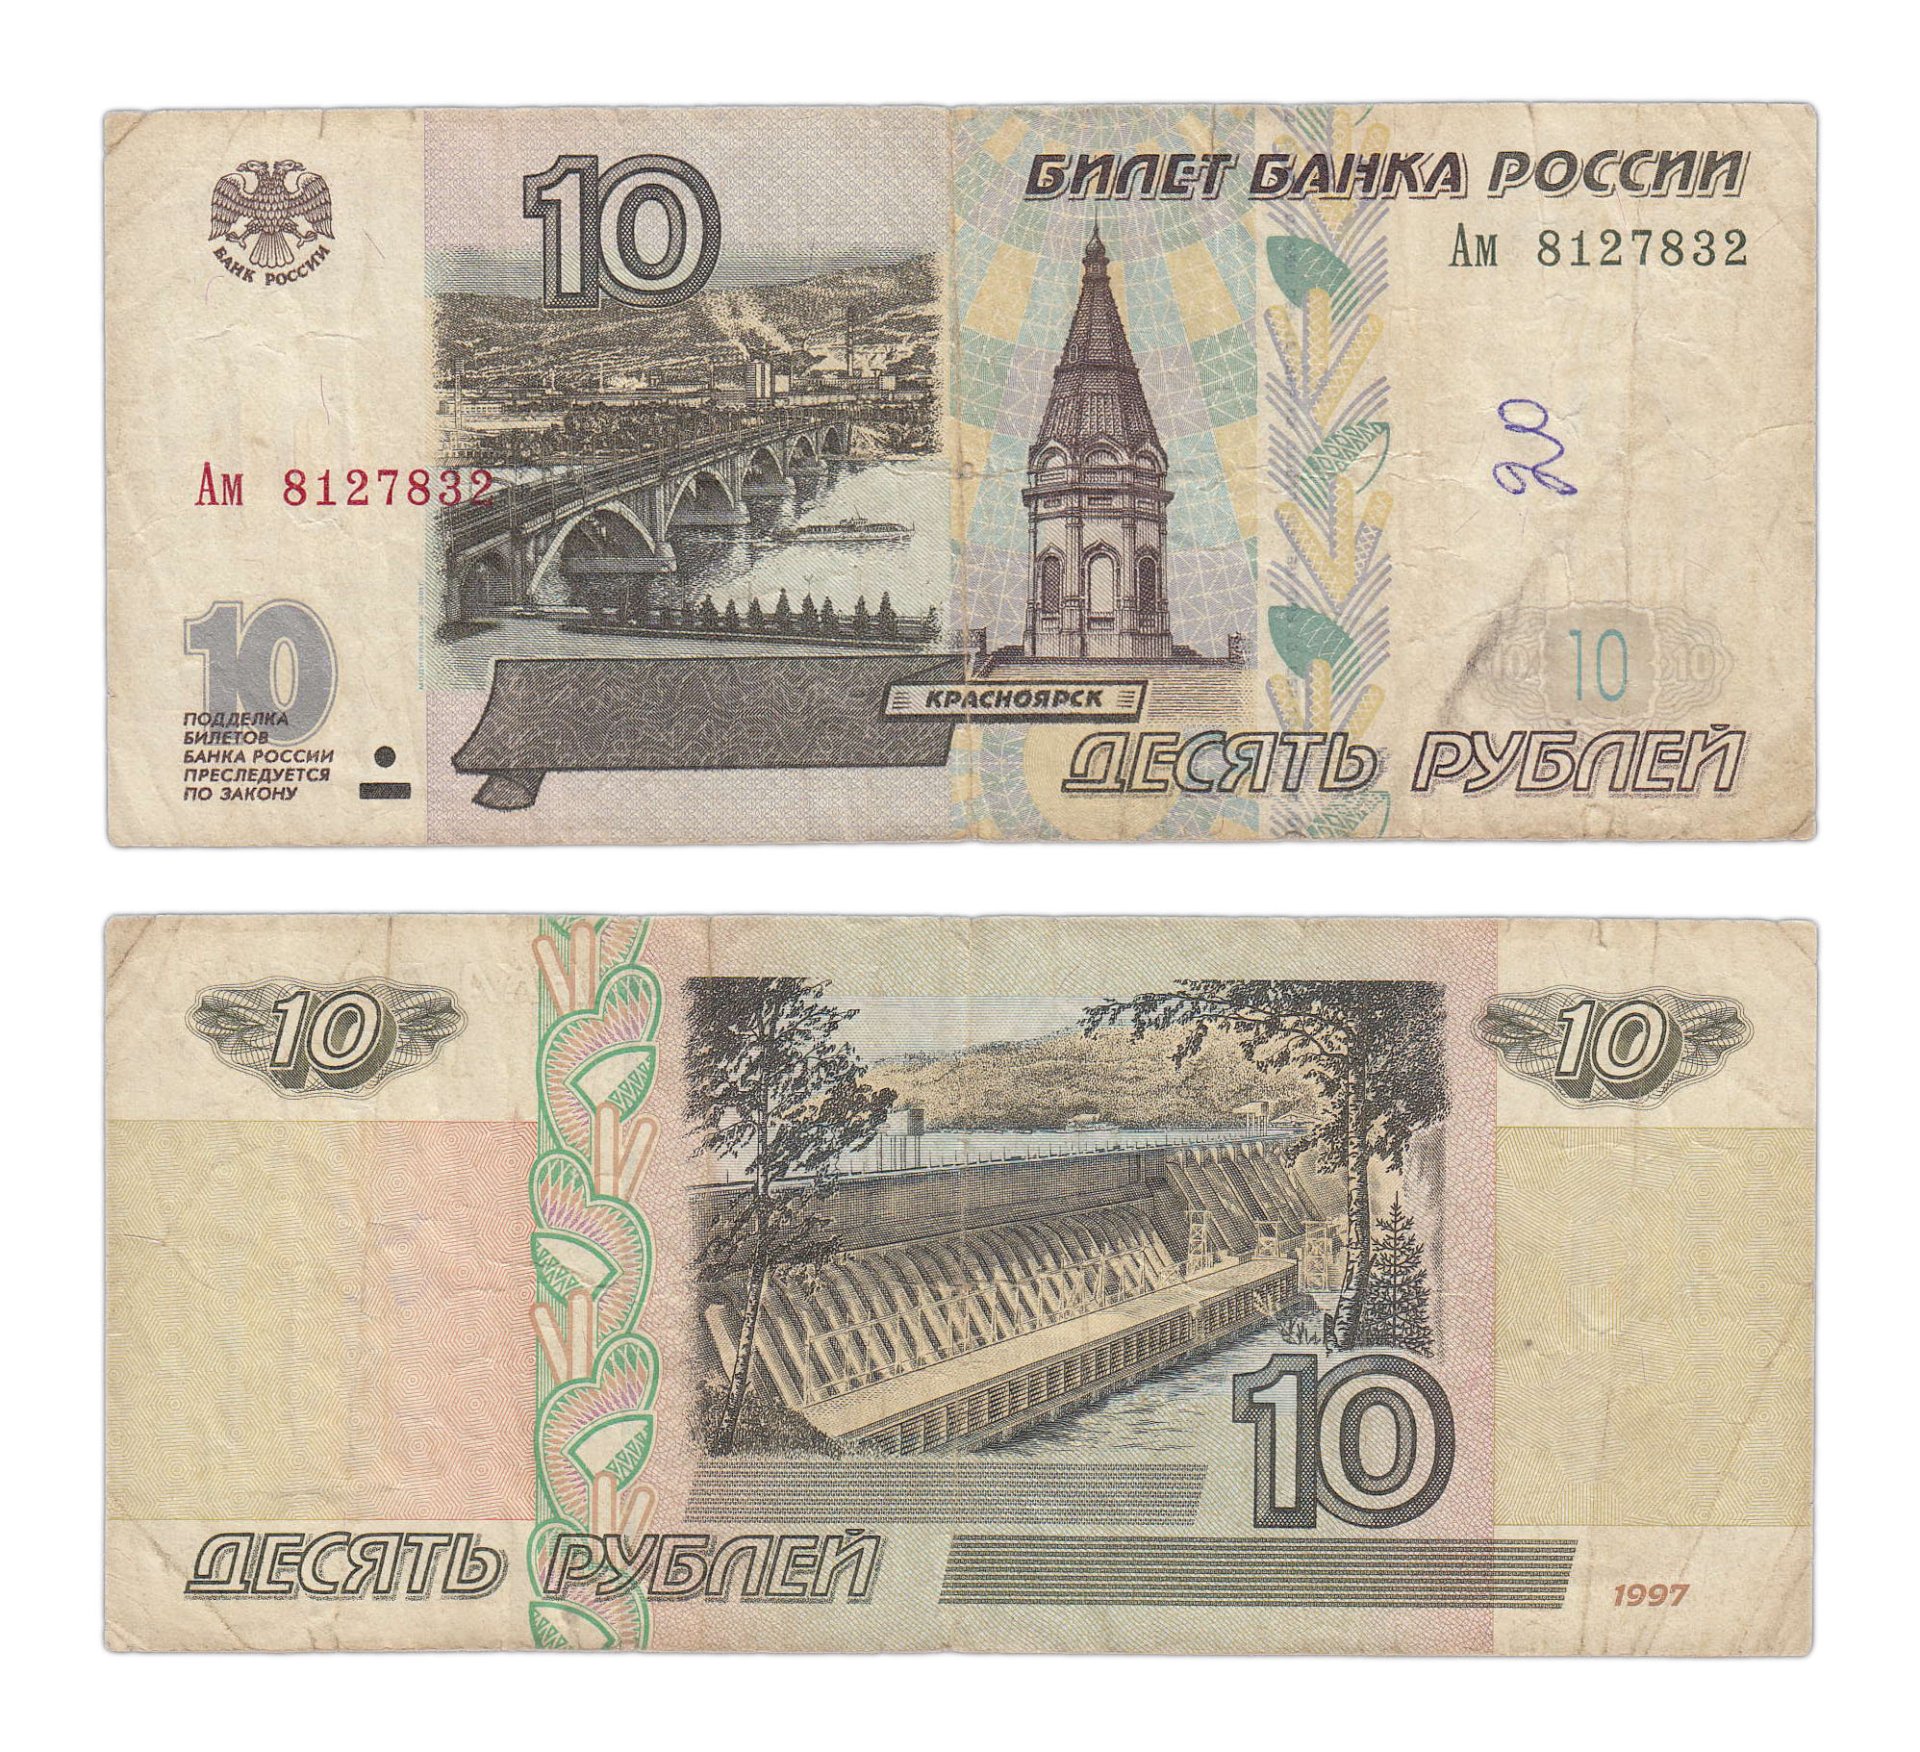 Купюры достоинством 5 рублей. 10 Рублей банкнота. 10 Рублей бумажные. 10 Рублей 1997 года. Российские купюры 10 рублей.